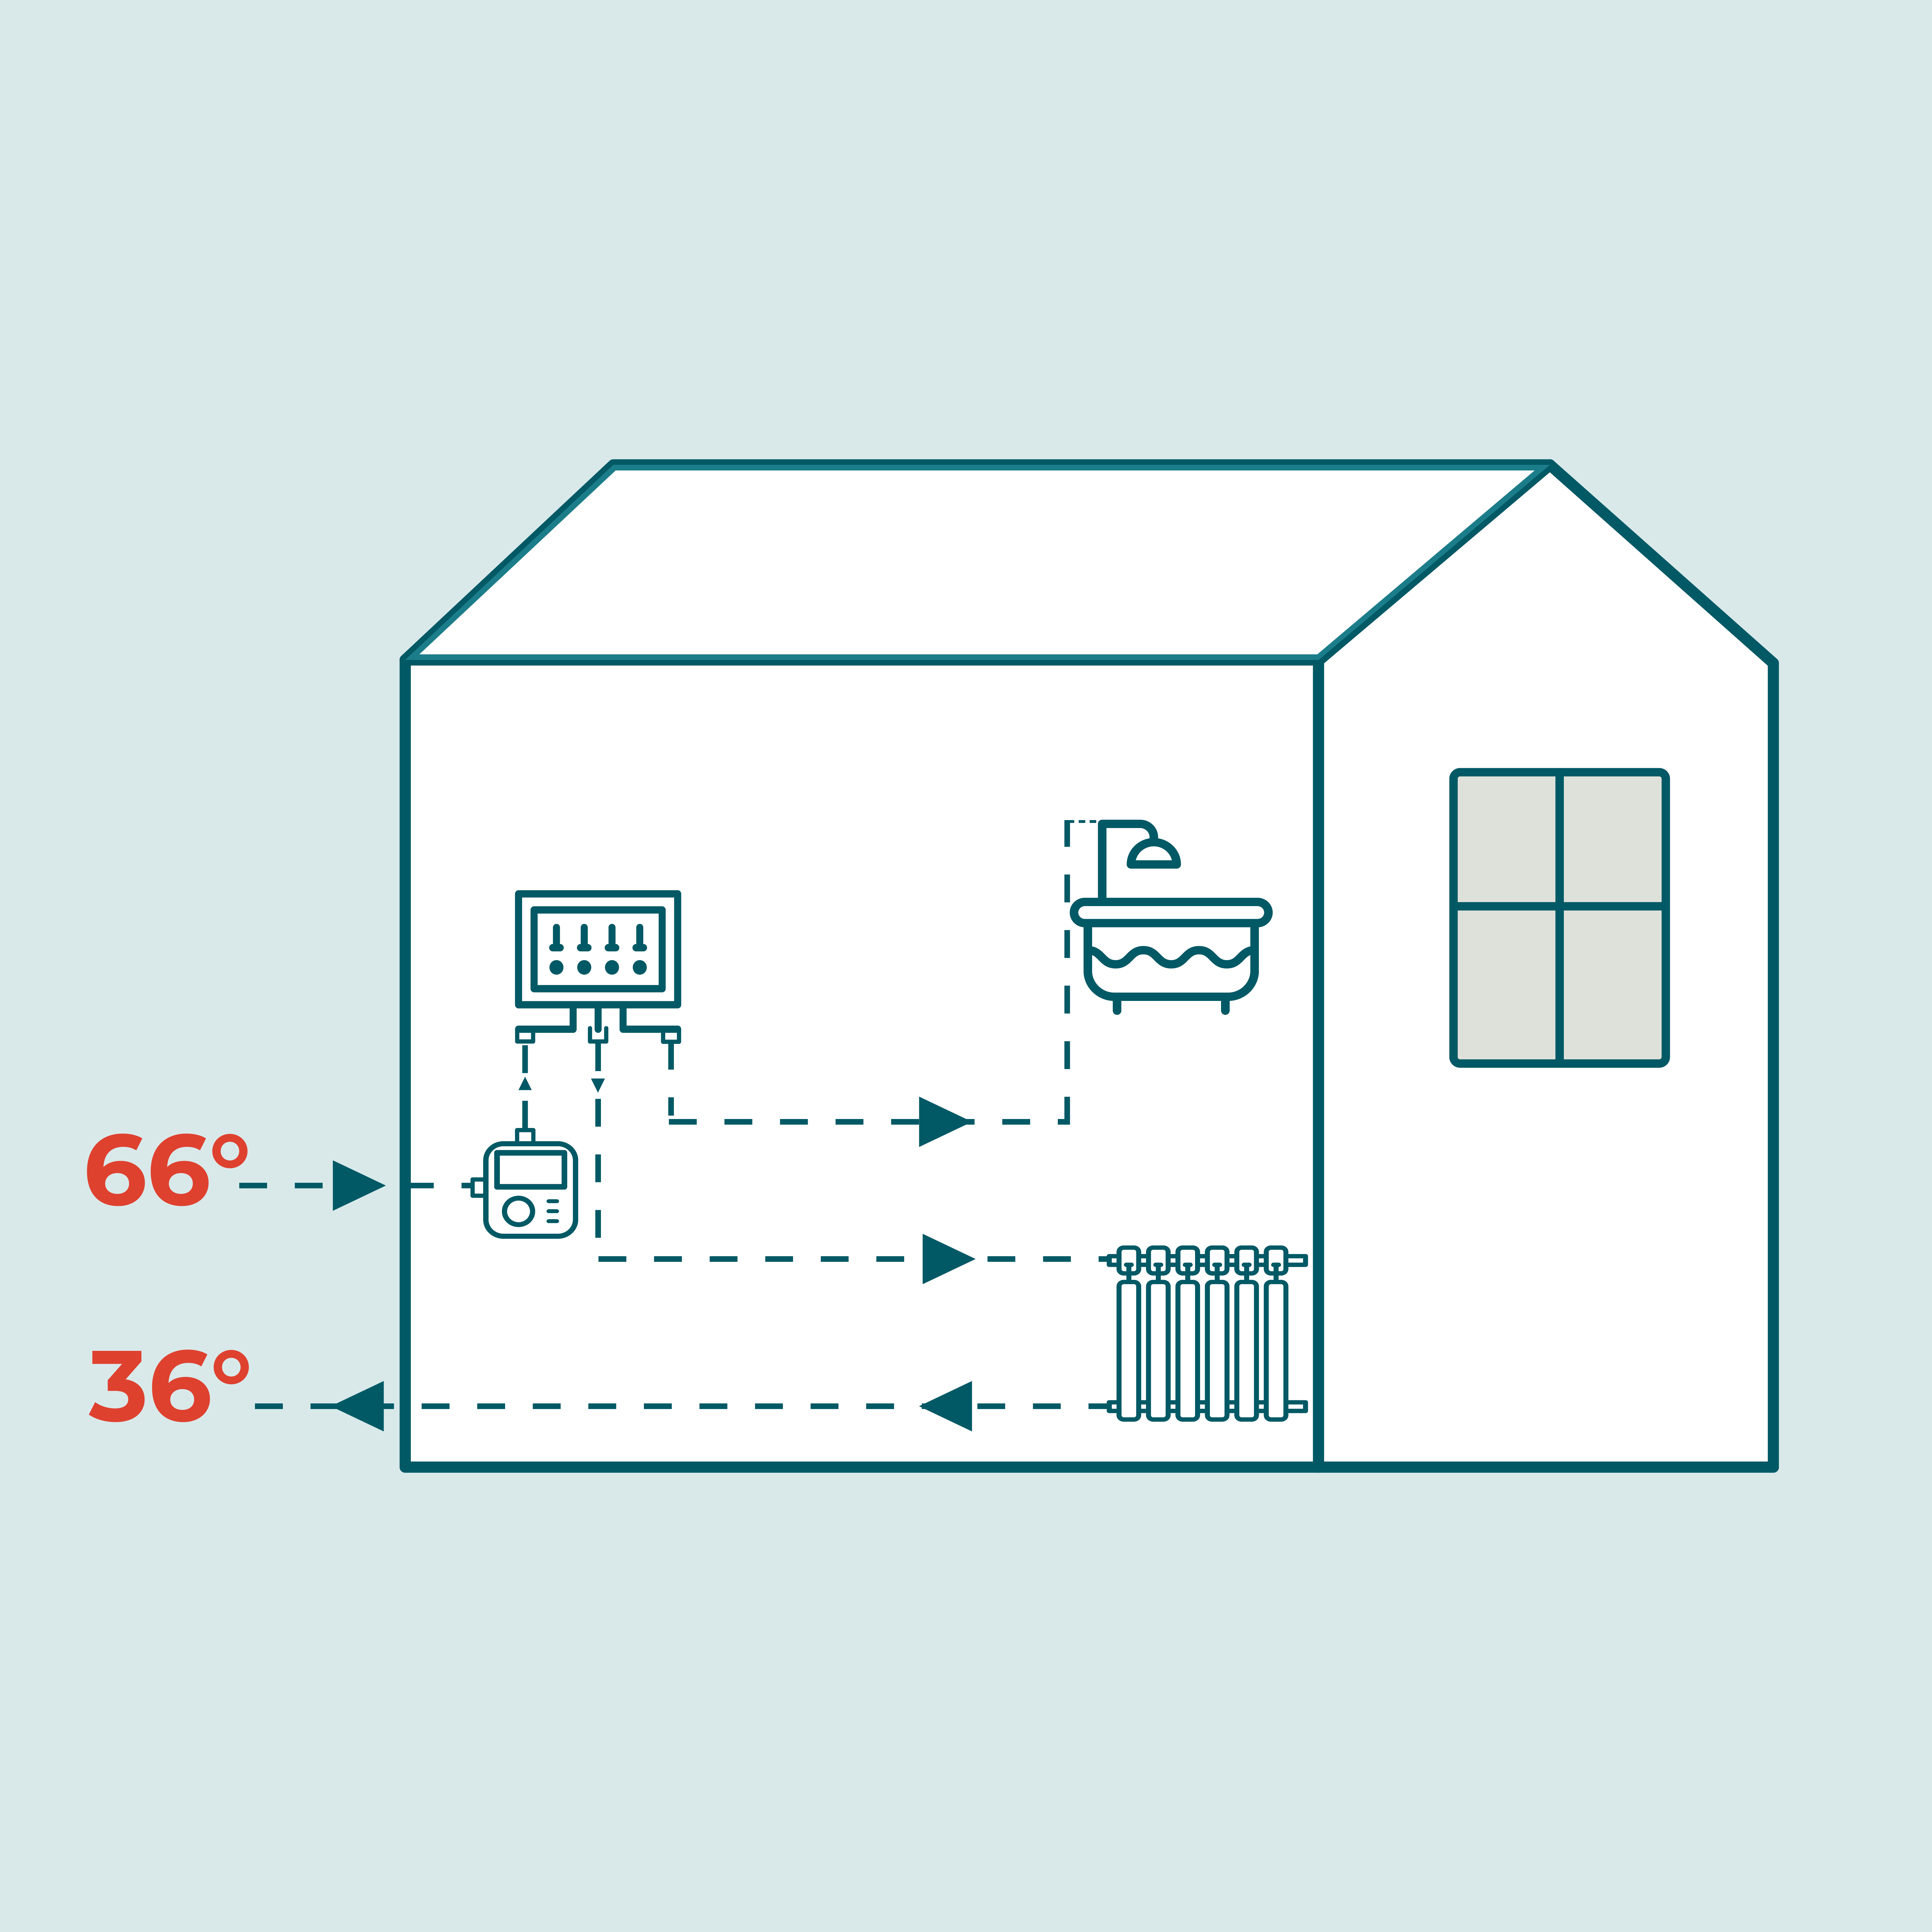 Billedet illustrerer et hus som modtager fjernvarmevand på 66 grader, og som returneres ud af boligen ved 36 grader.